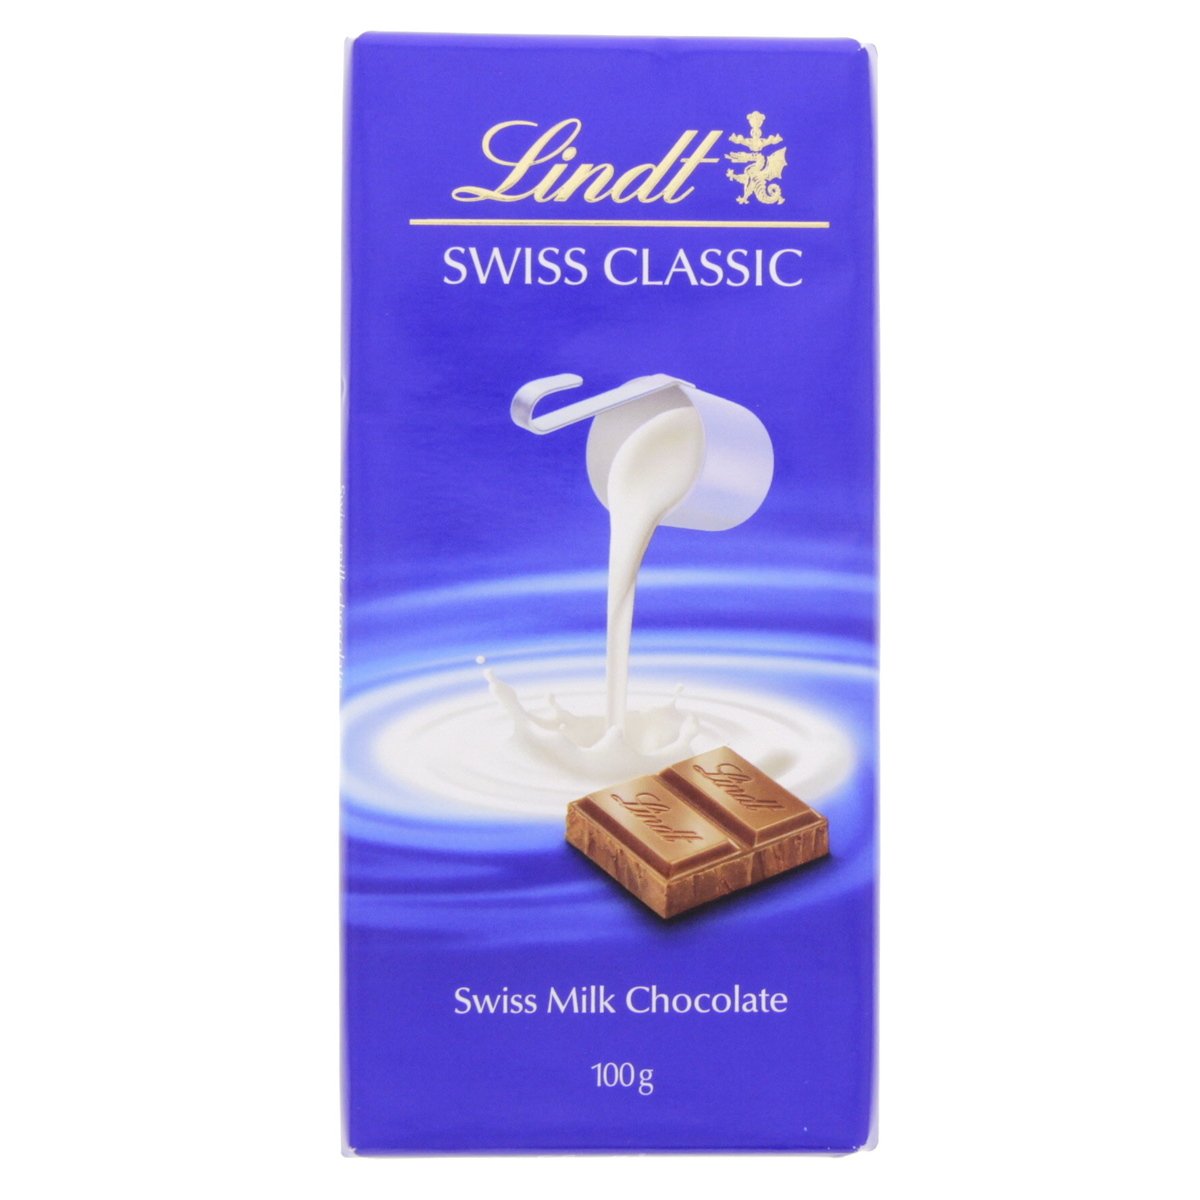 ليندت سويس كلاسيك شوكولاتة الحليب السويسرية 100 جم